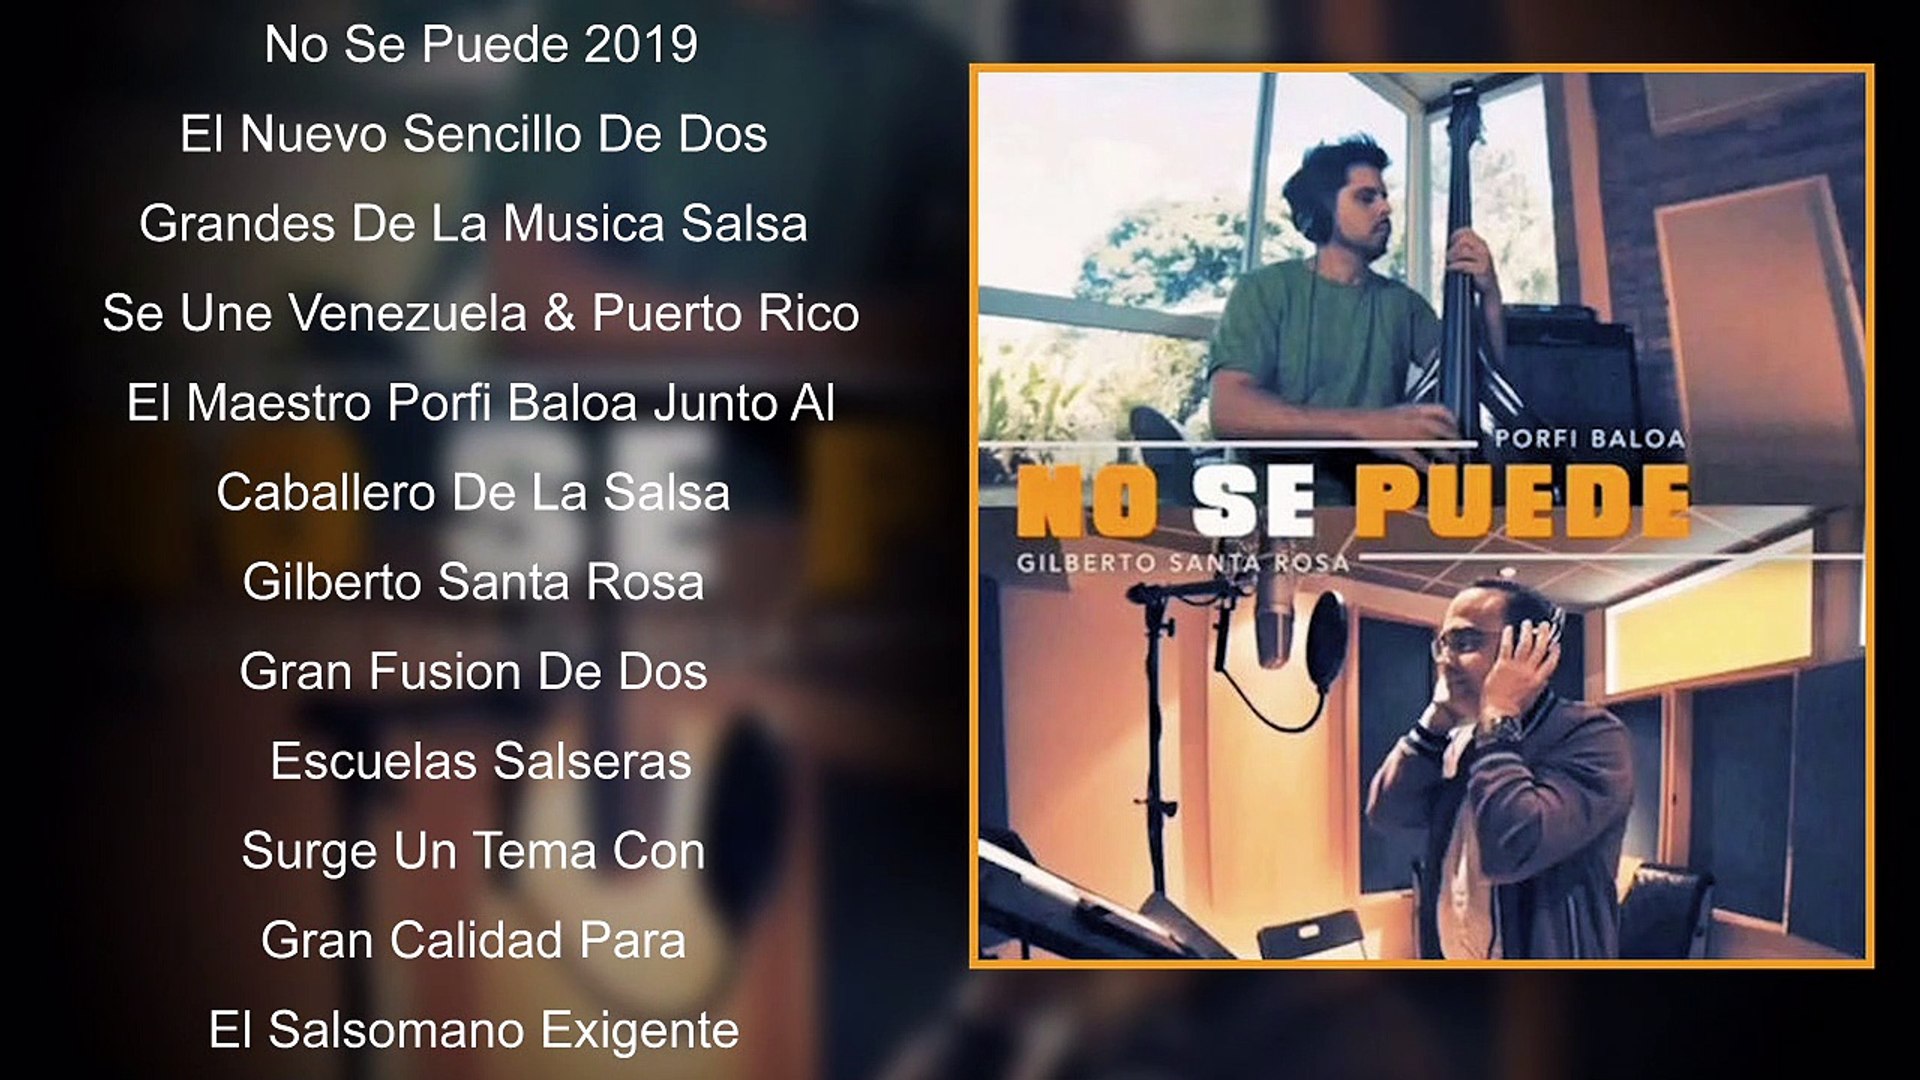 Porfi Baloa & Gilberto Santa Rosa - NO SE PUEDE - Single 2019 - Vídeo  Dailymotion